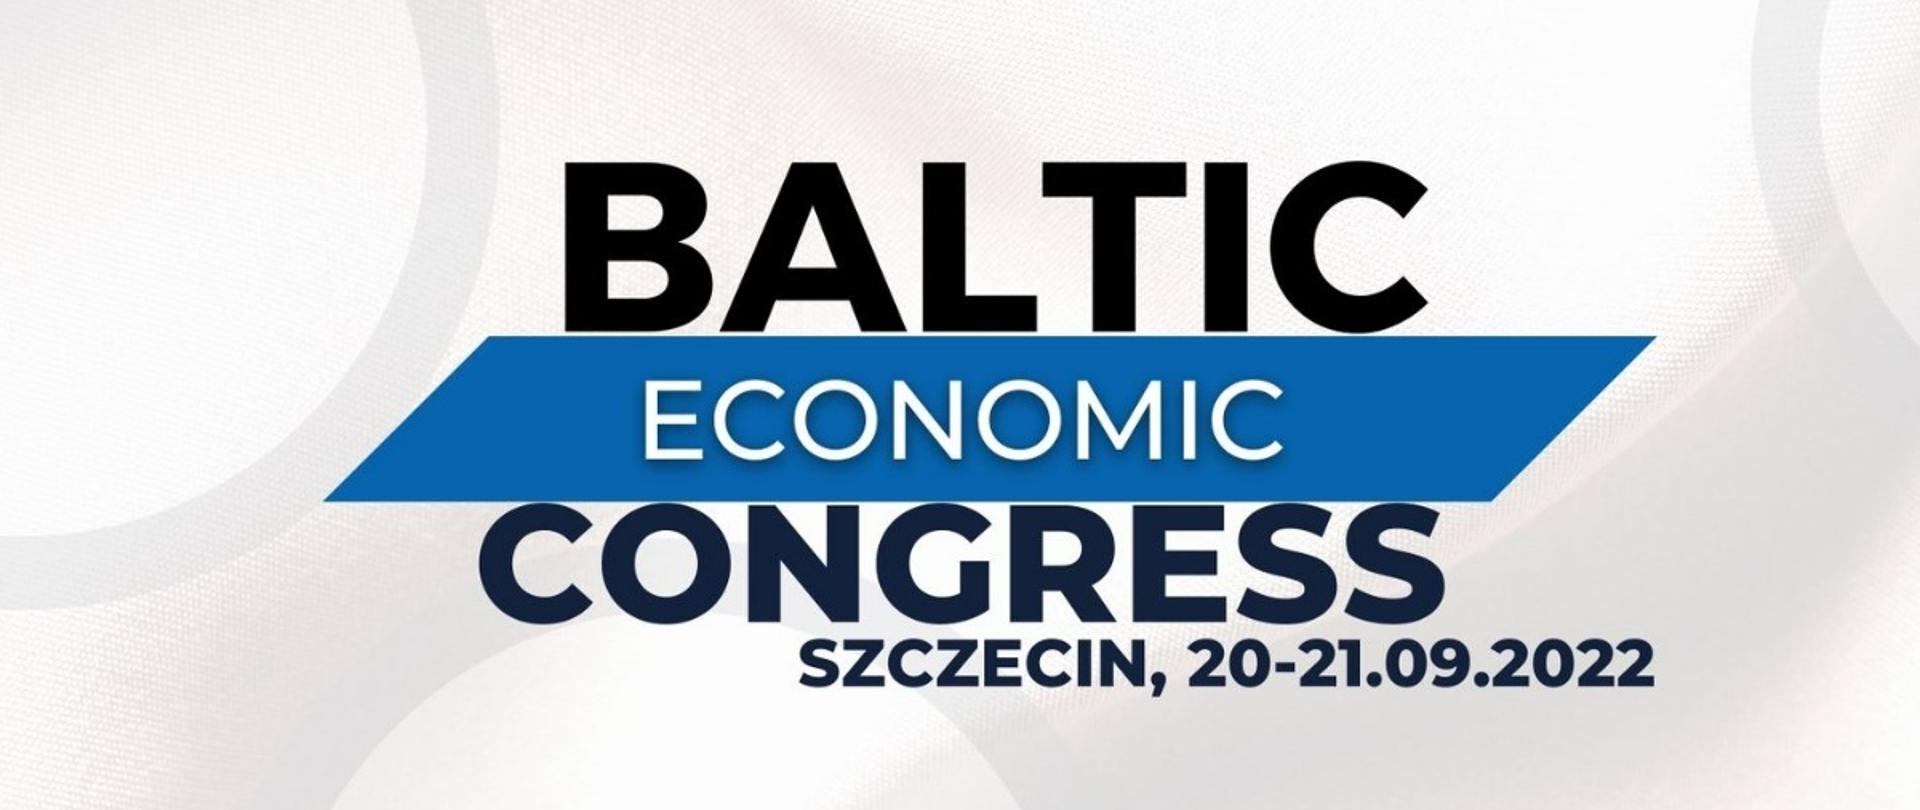 plakat z napisem Baltic Economic Congress